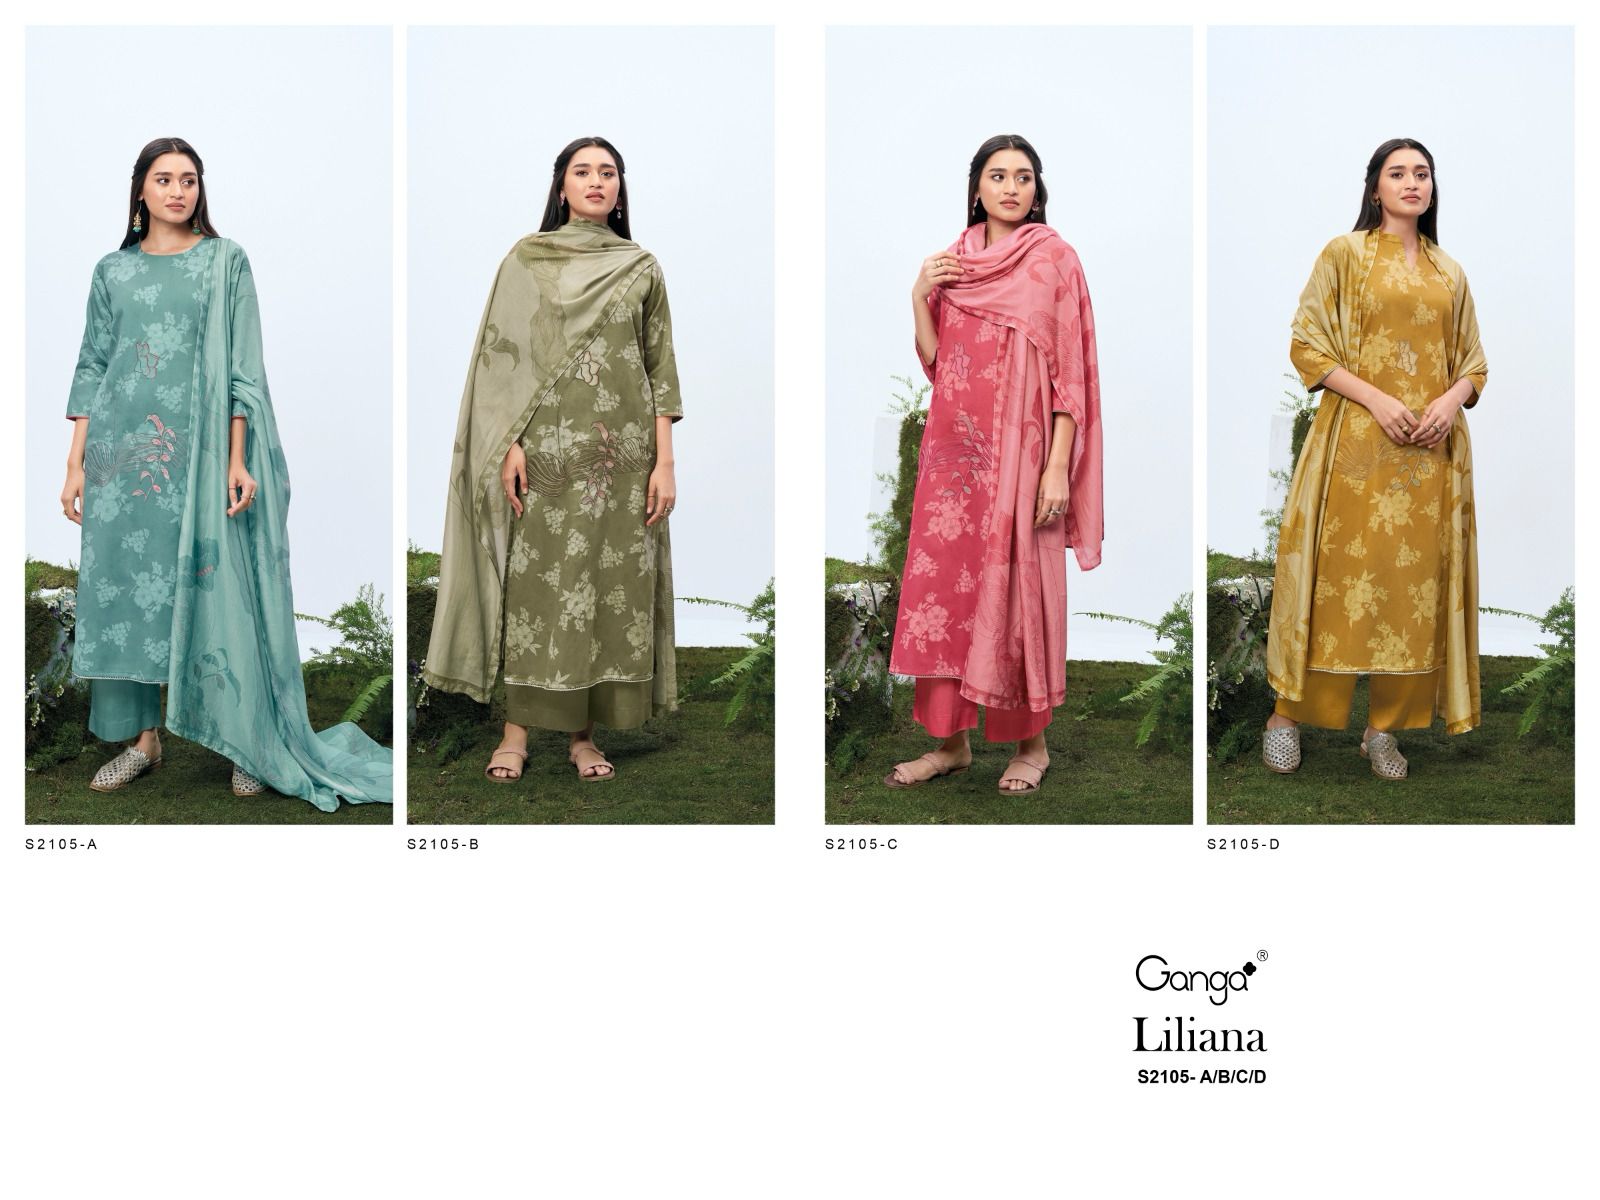 Jill 2107 Ganga Cotton Silk Plazzo Style Suits – Kavya Style Plus